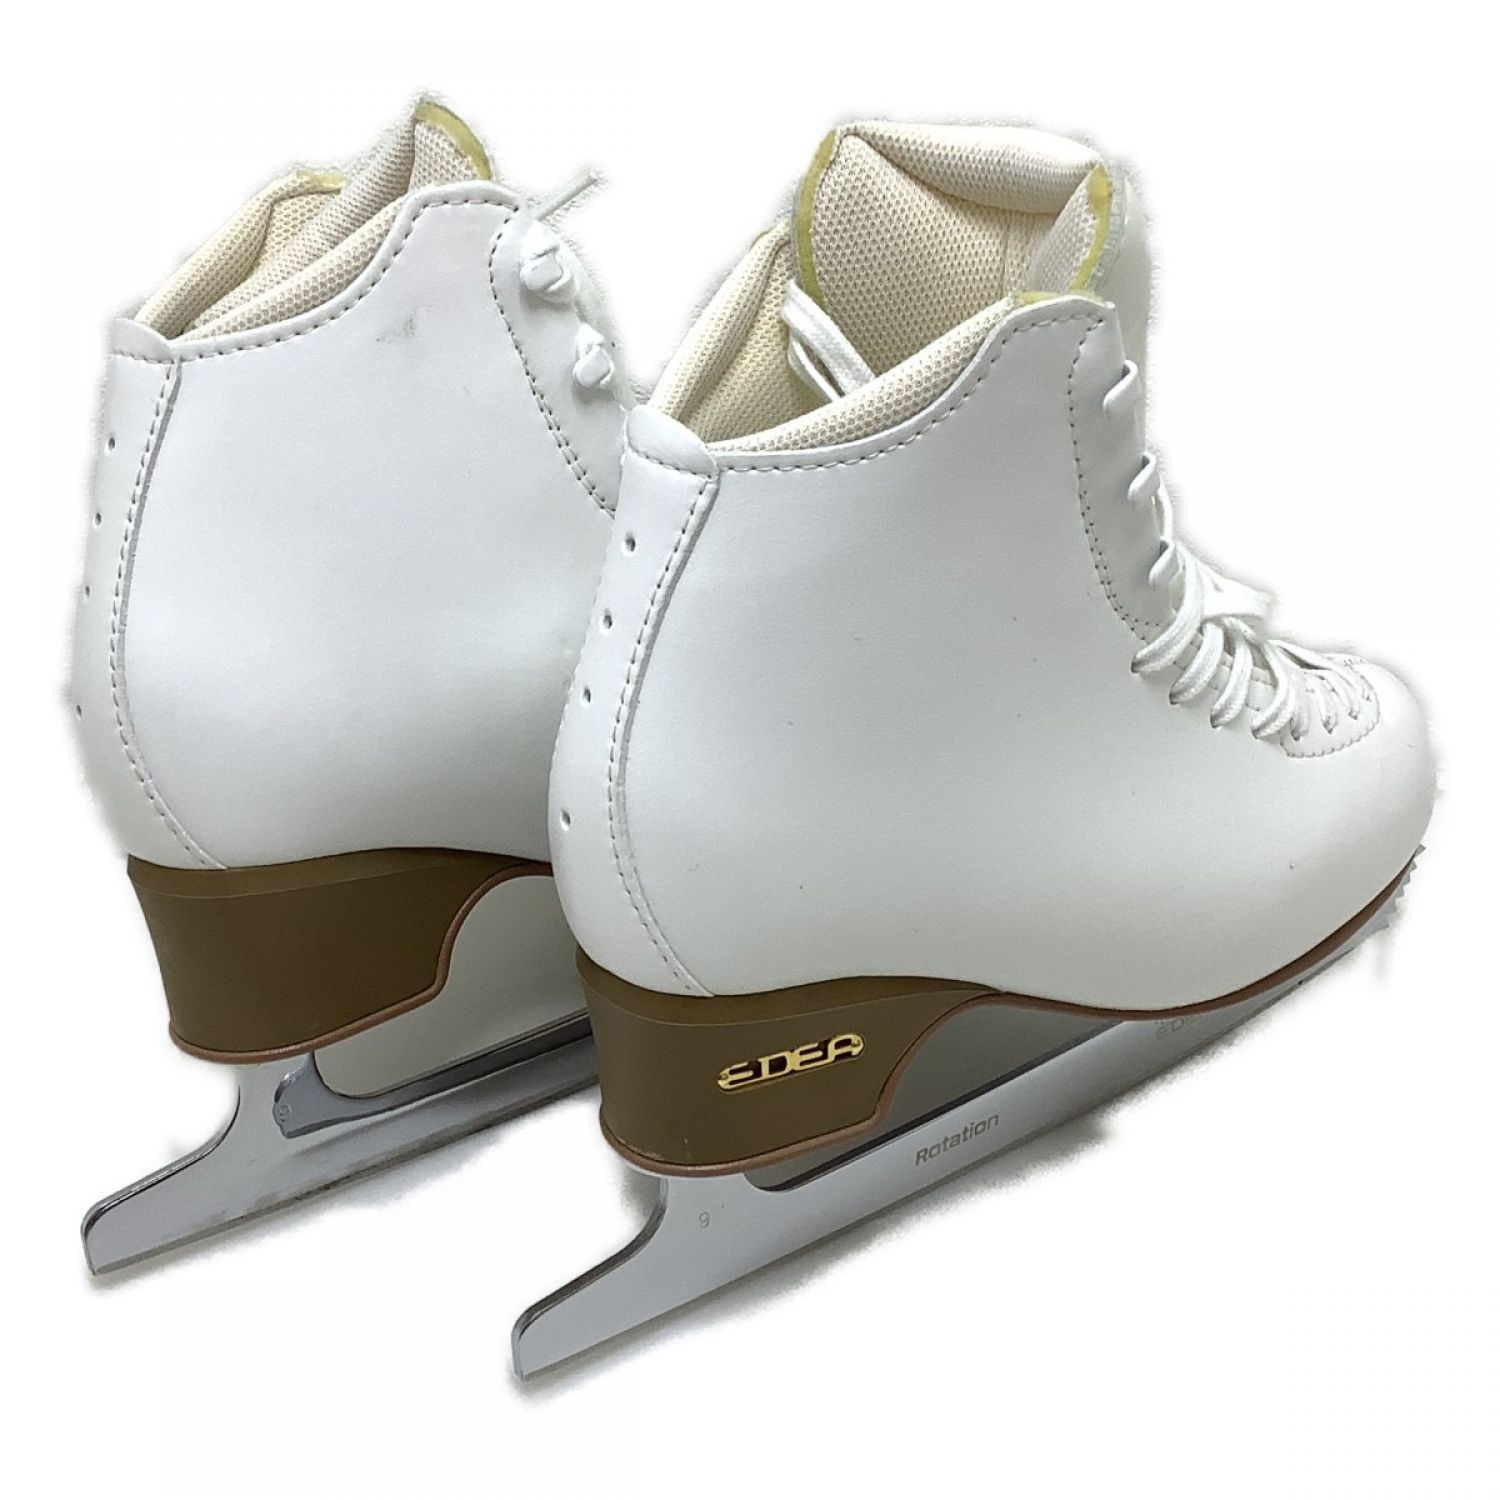 EDEAアイスフライ24.5B実寸23.5フィギュアスケート靴 エデア